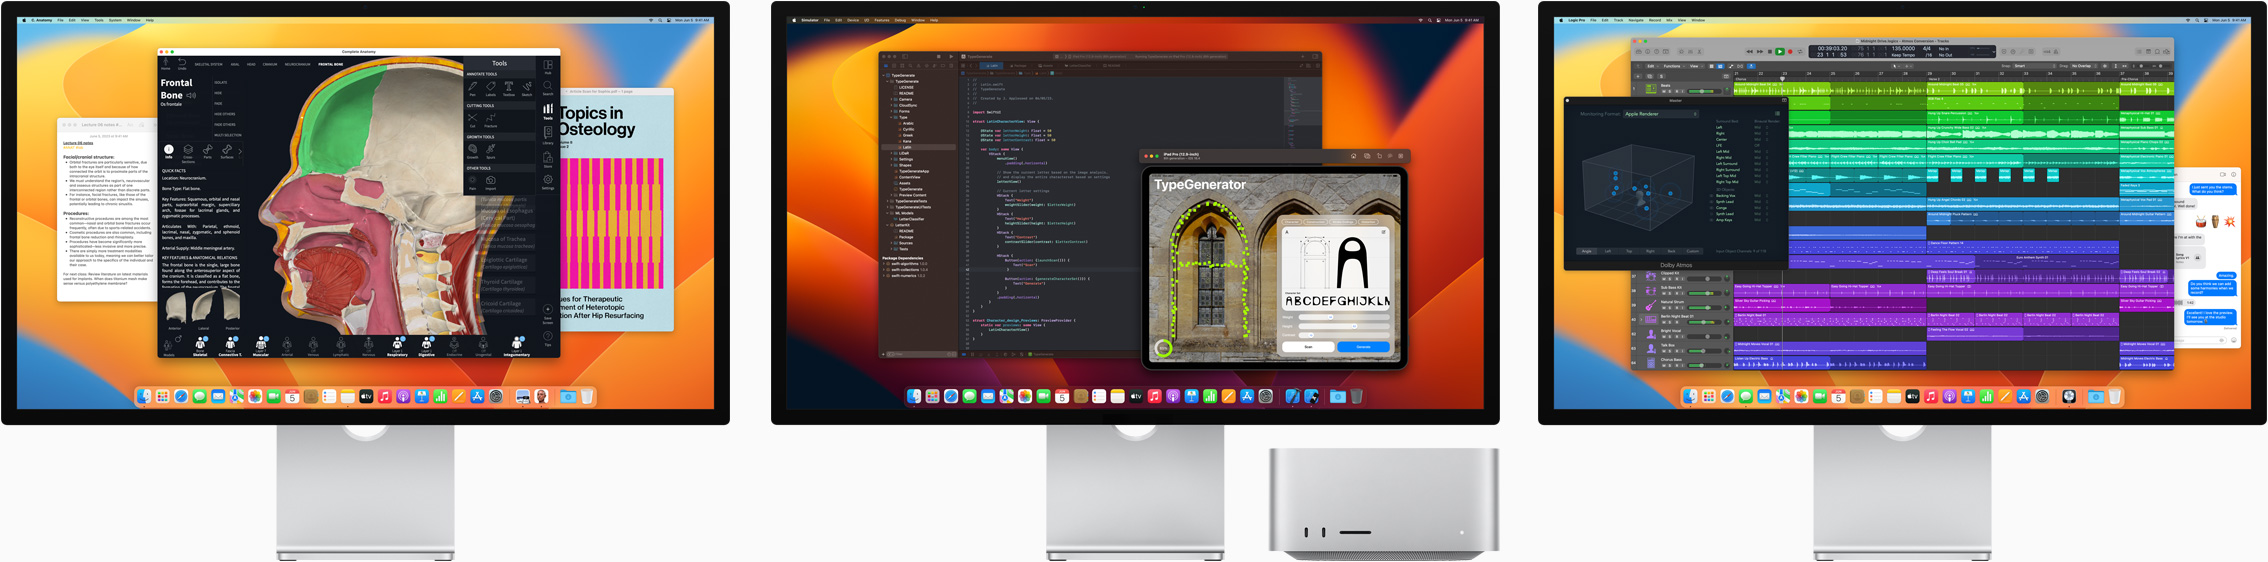 Mac Studio dan tiga Studio Display, semuanya menampilkan aplikasi yang berbeda di layar